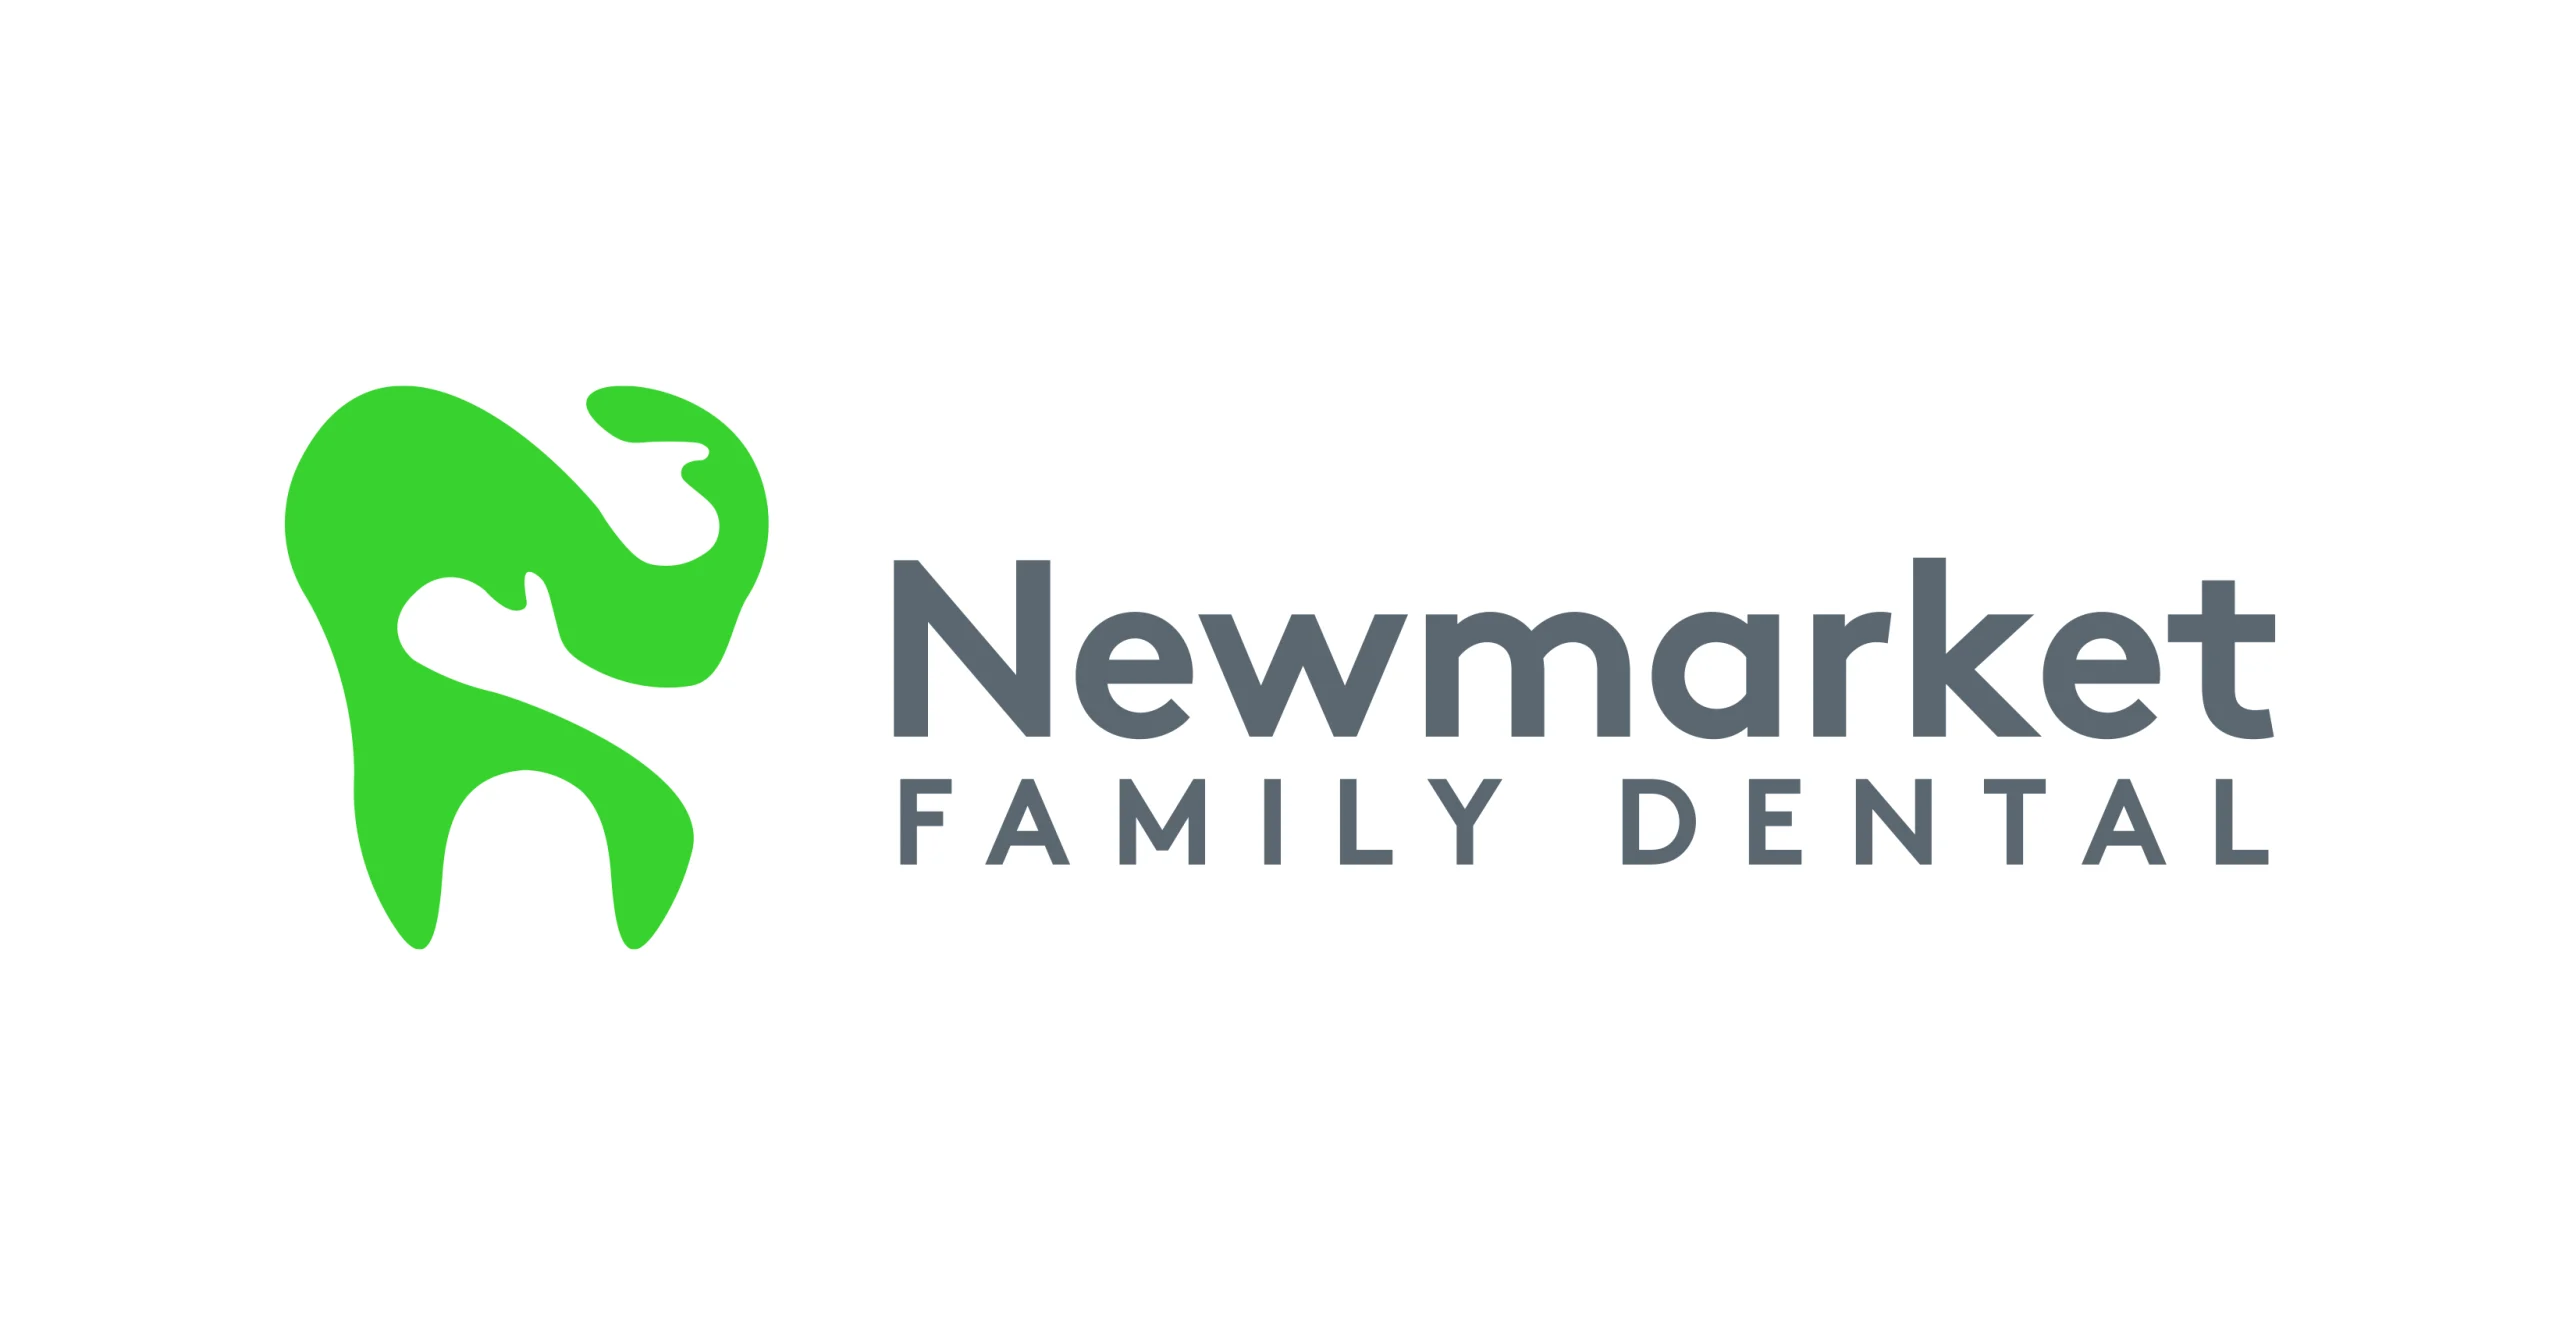 Newmarket Family Dental